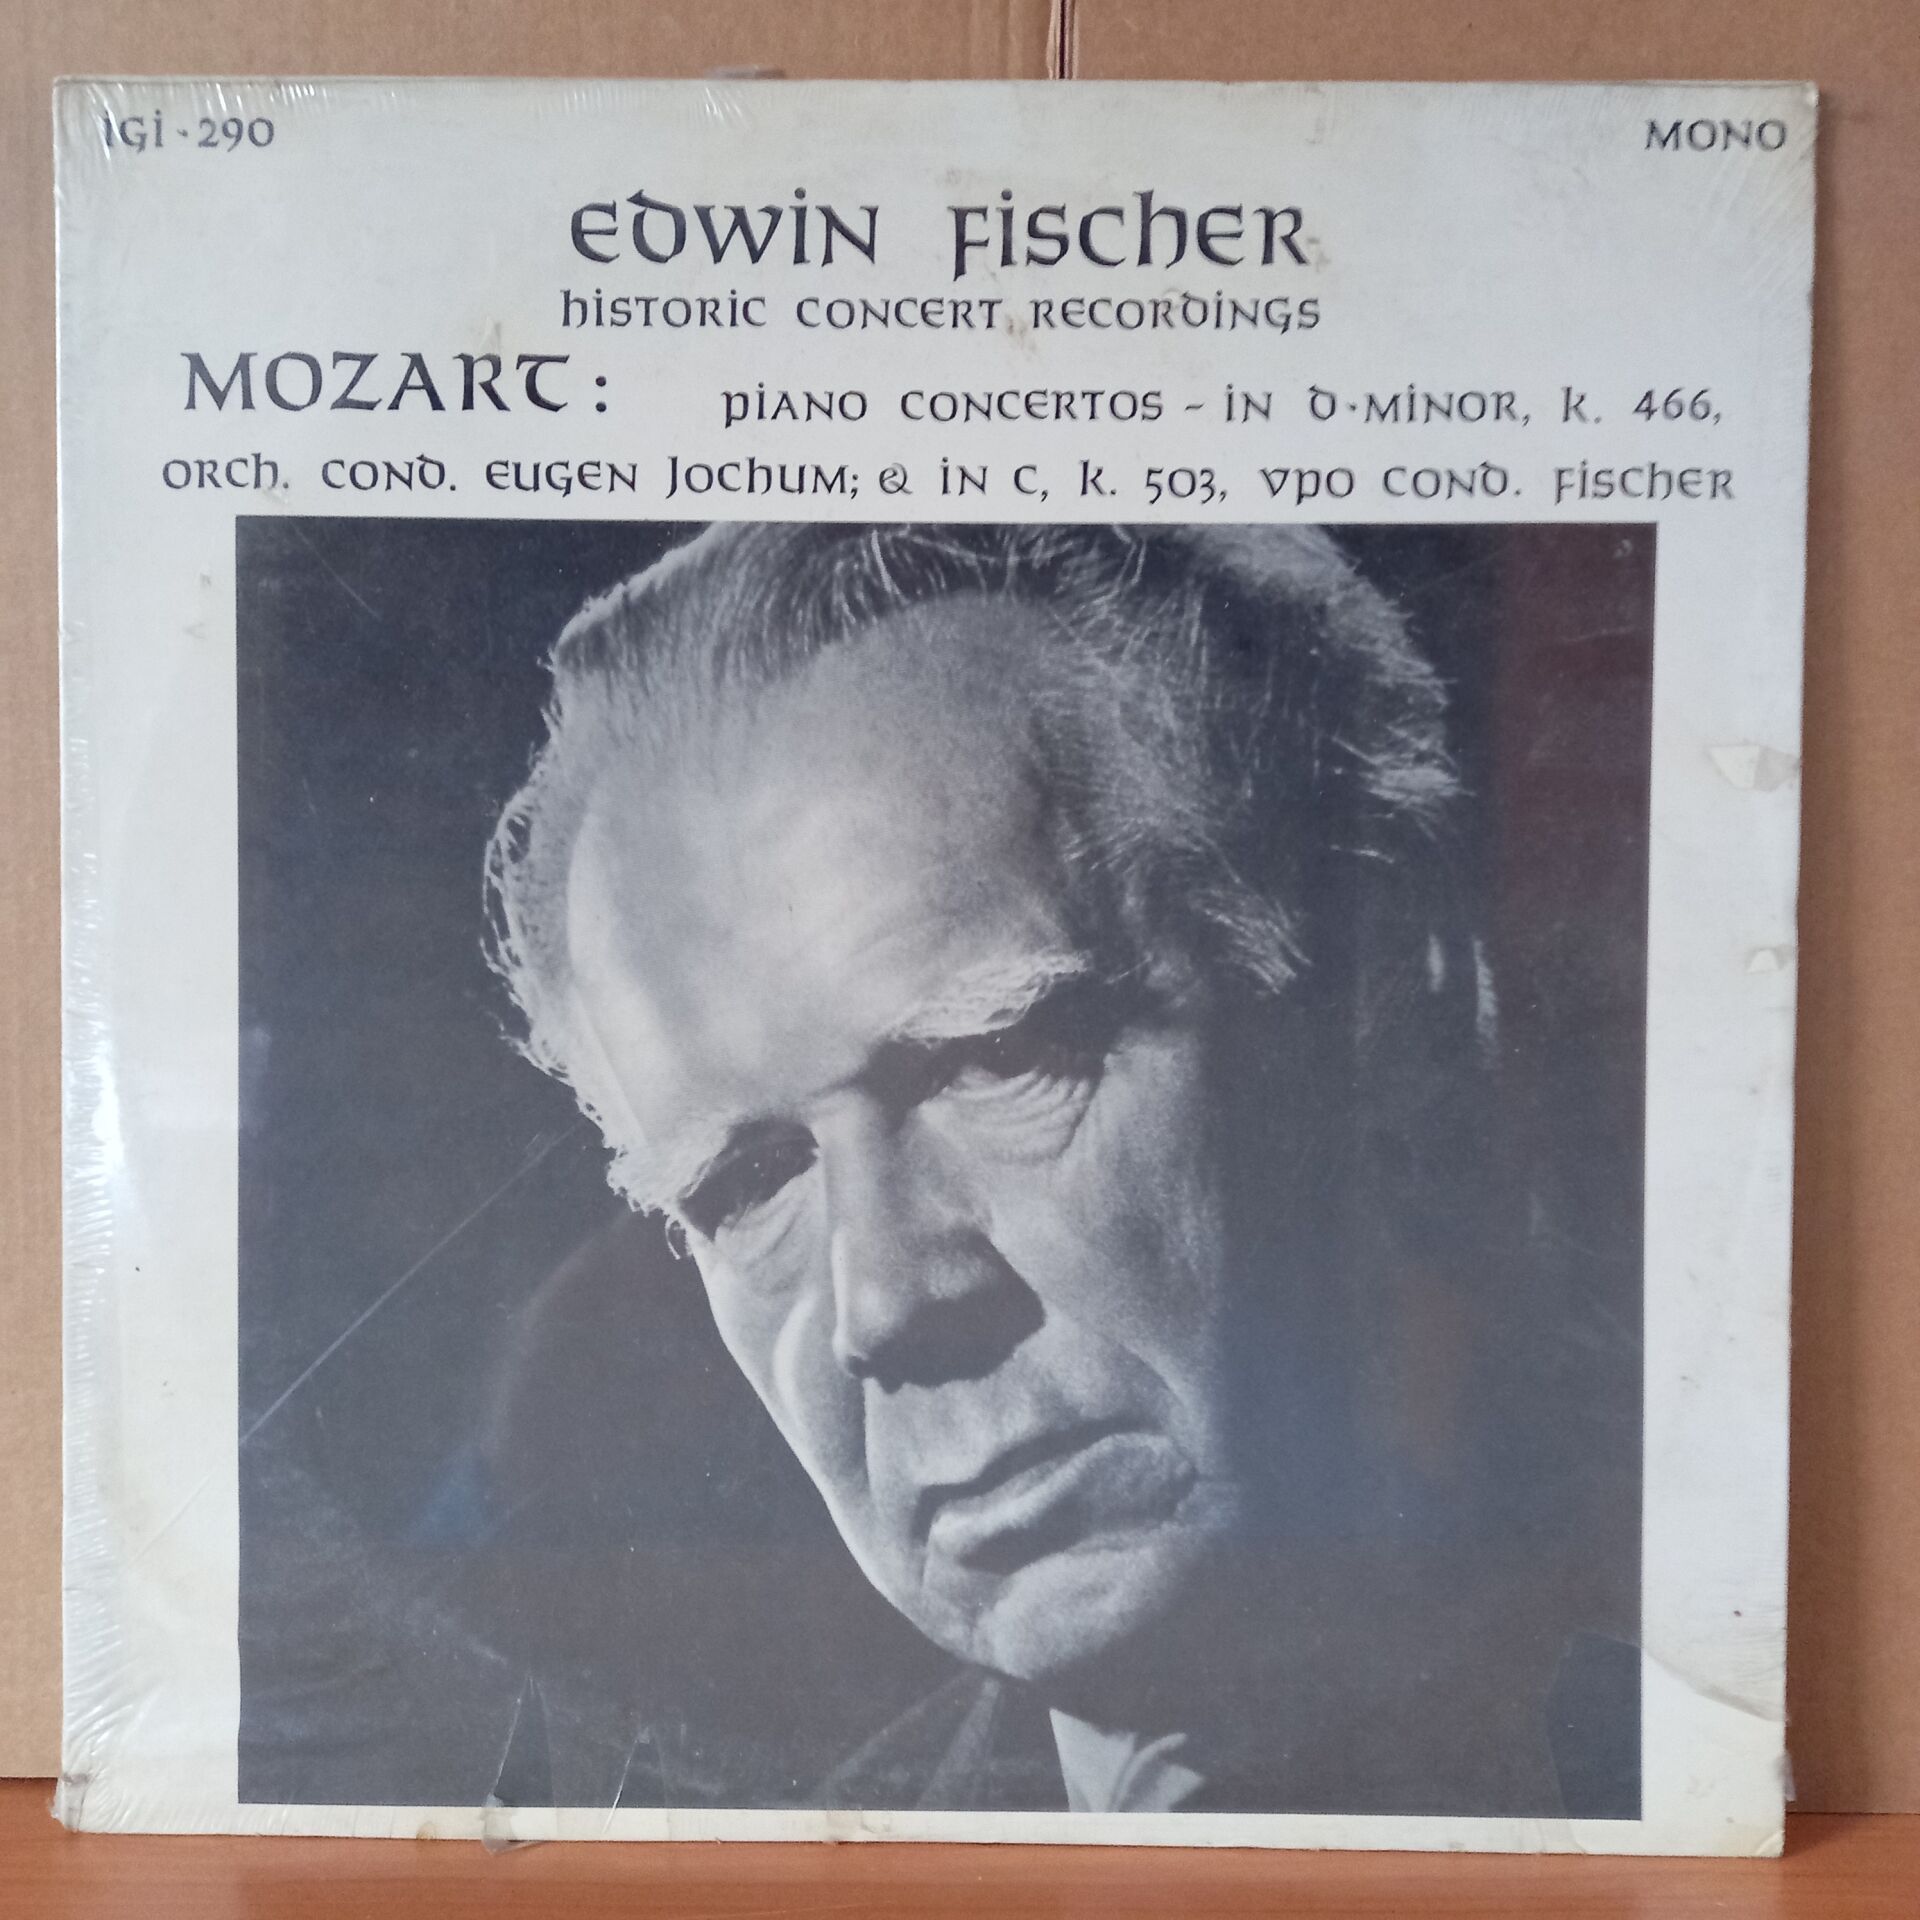 EDWIN FISCHER / MOZART: PIANO CONCERTOS IN D MINOR K. 466 / EUGEN JOCHUM (1954) - LP DÖNEM BASKISI SIFIR PLAK